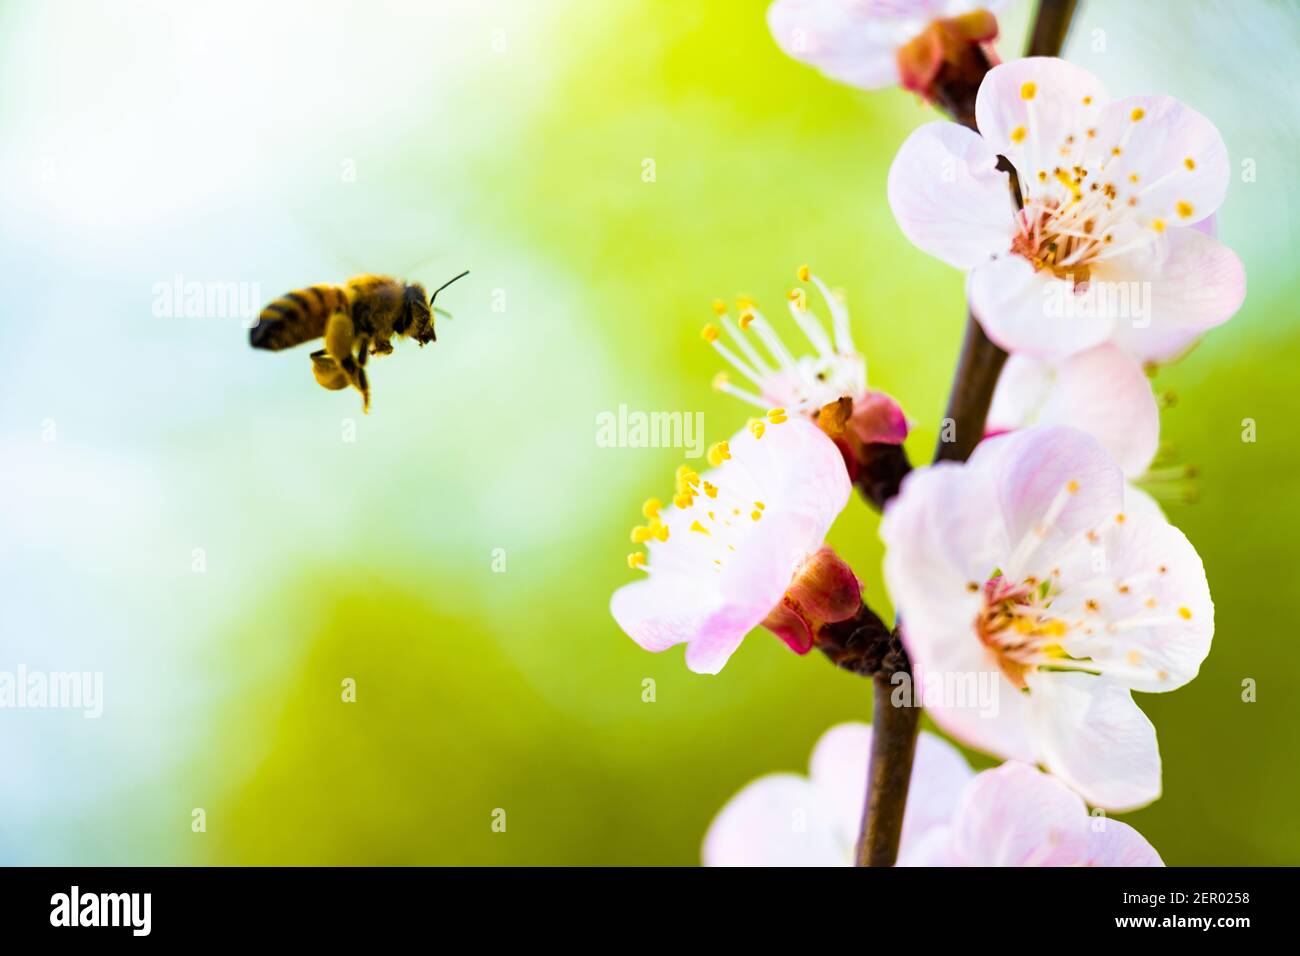 (Selektiver Fokus, Fokus auf die Stangen) entkochte Biene, die während der Blütezeit Nektar von einigen Stangen Kirschblüten sammelt. Natürlicher Rücken Stockfoto